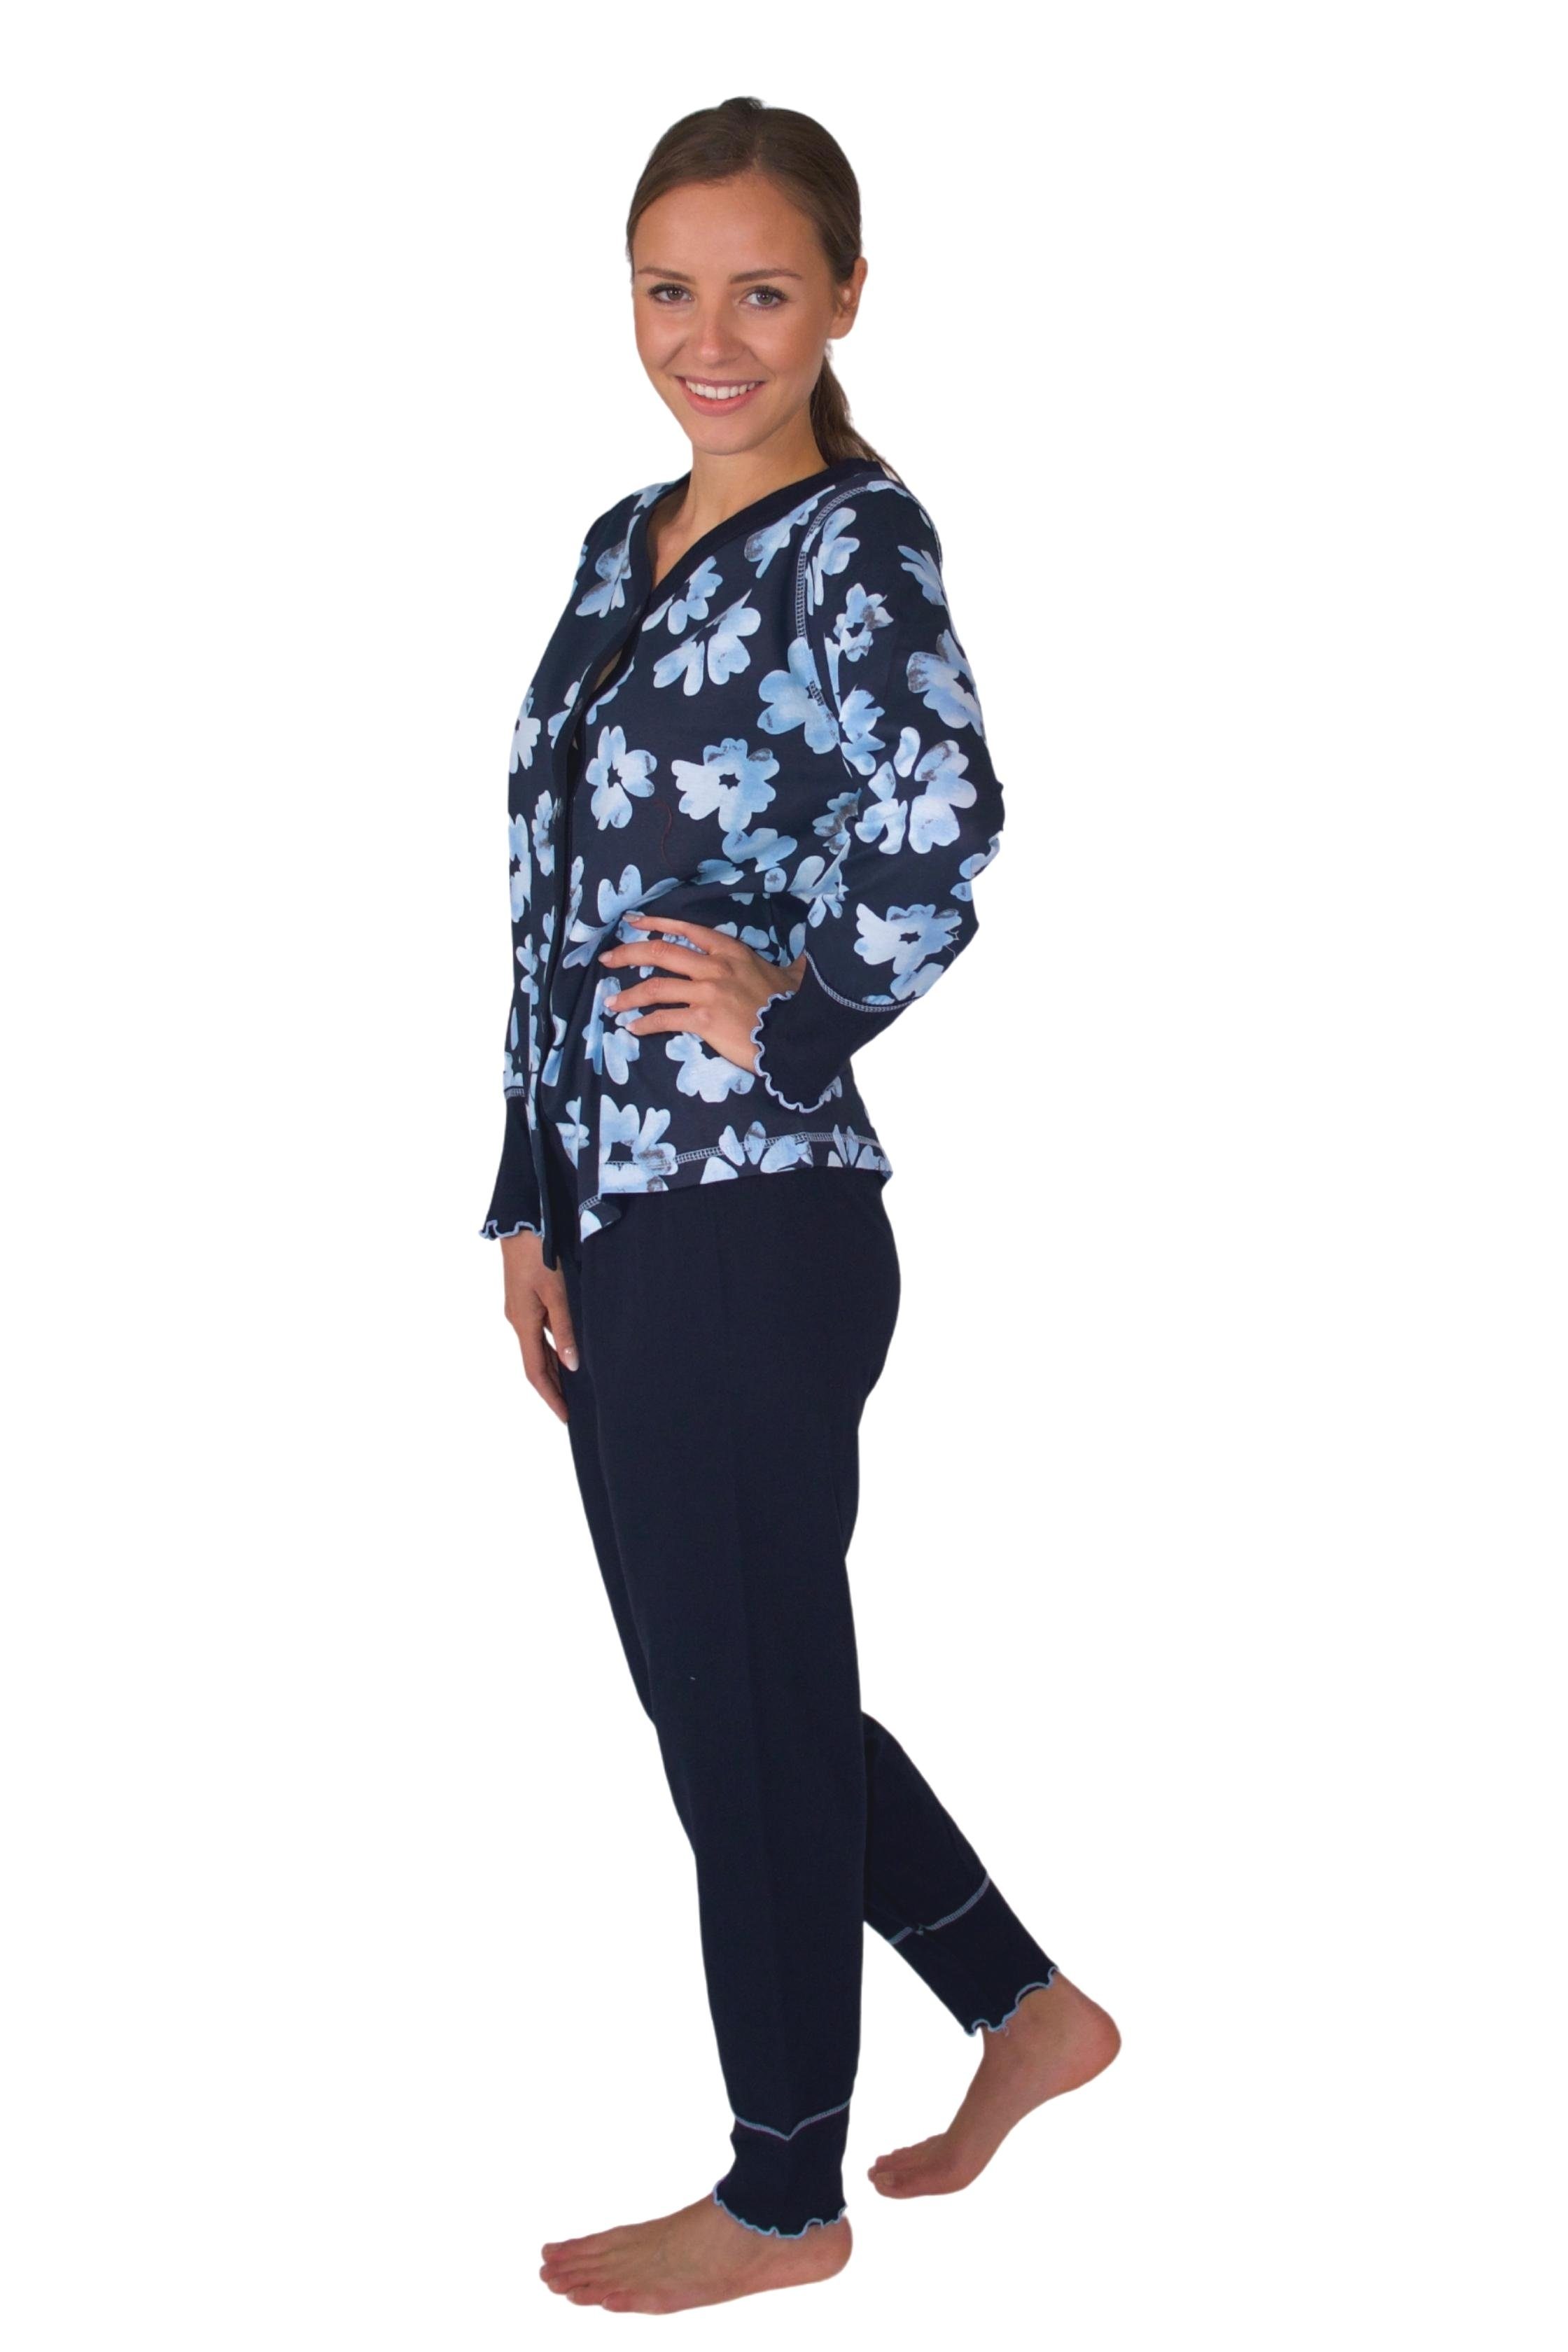 Extrem beliebter Klassiker Consult-Tex Pyjama Damen Pyjama Baumwolle-Jersey weicher Qualität DW311blau aus Schlafanzug